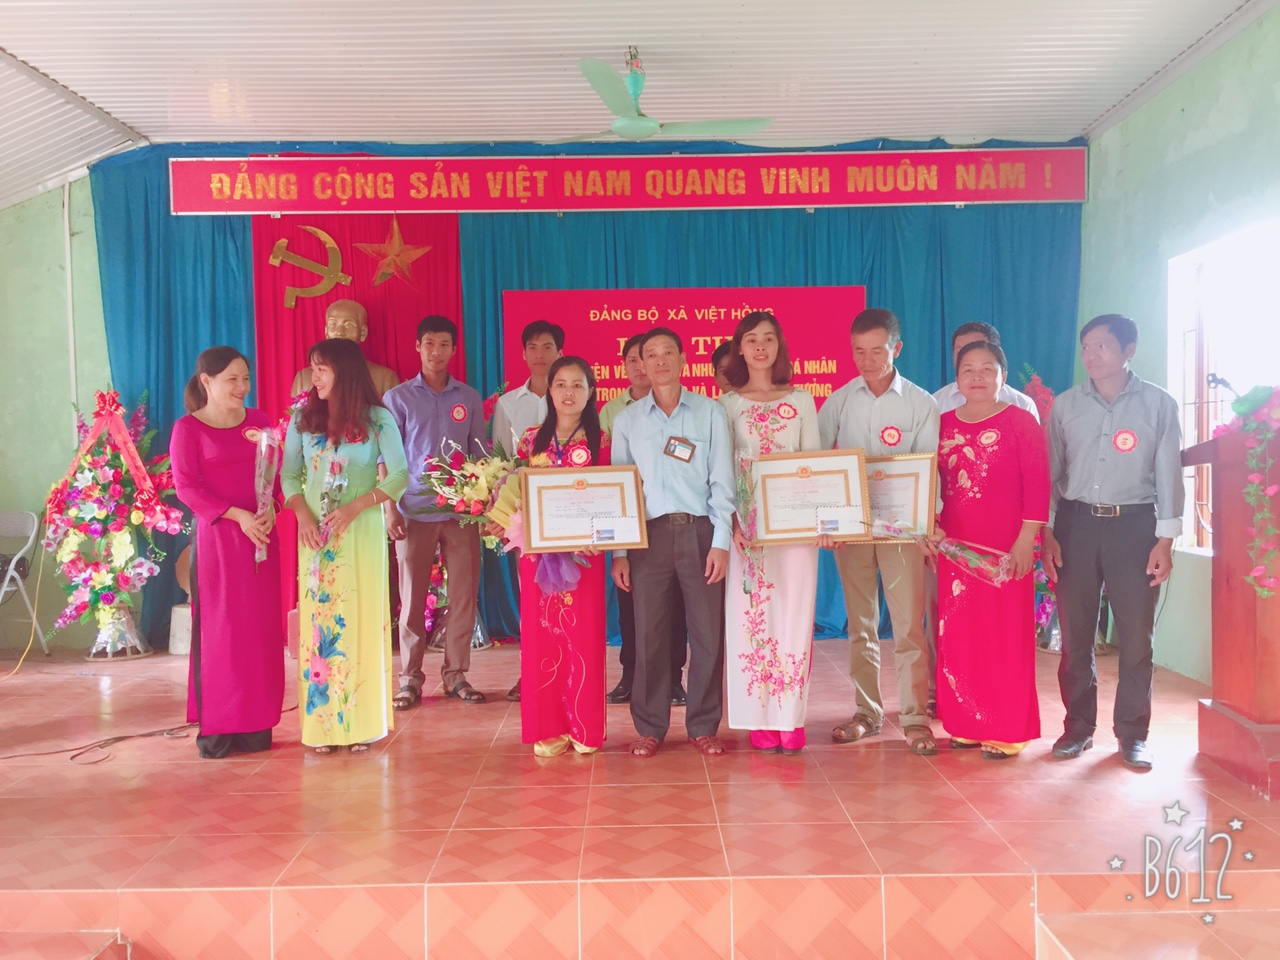 Hội thi chọn Bí thư Chi bộ Cơ quan giỏi năm 2017 Đảng bộ xã  Việt Hồng thành công tốt đẹp.